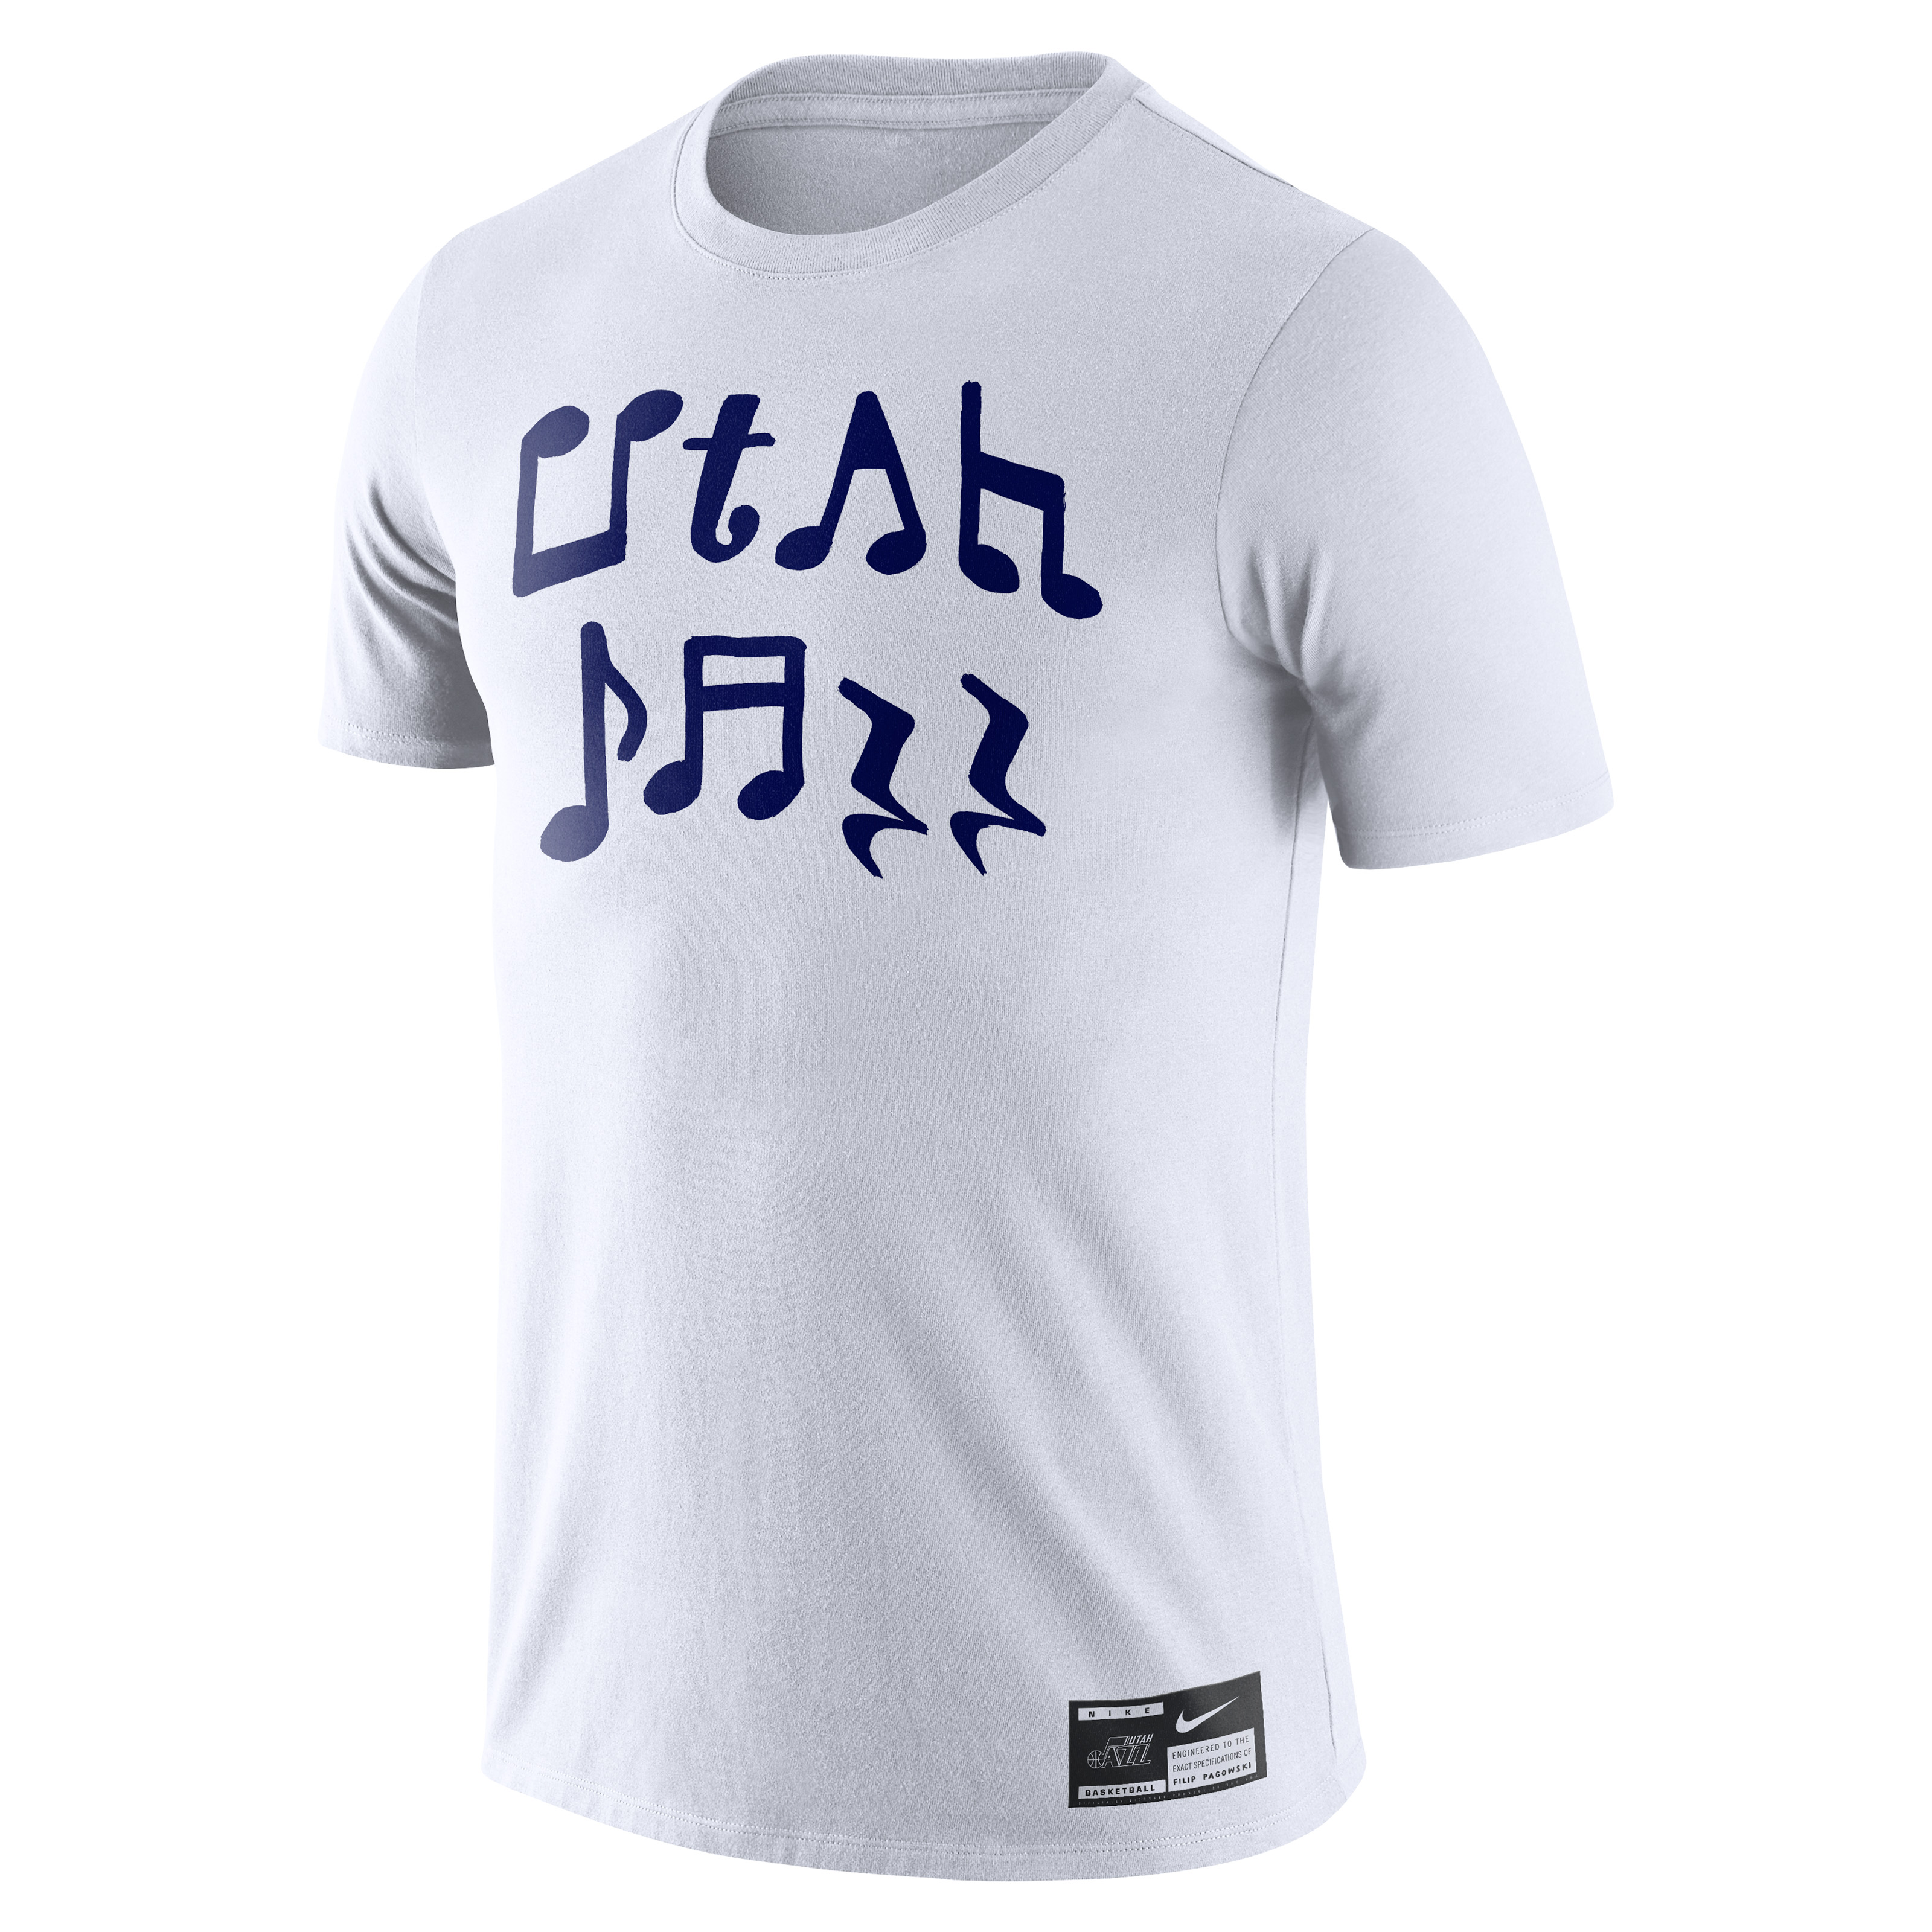 Filip Pagowski Nike T shirt &#x27;Utah Jazz&#x27;